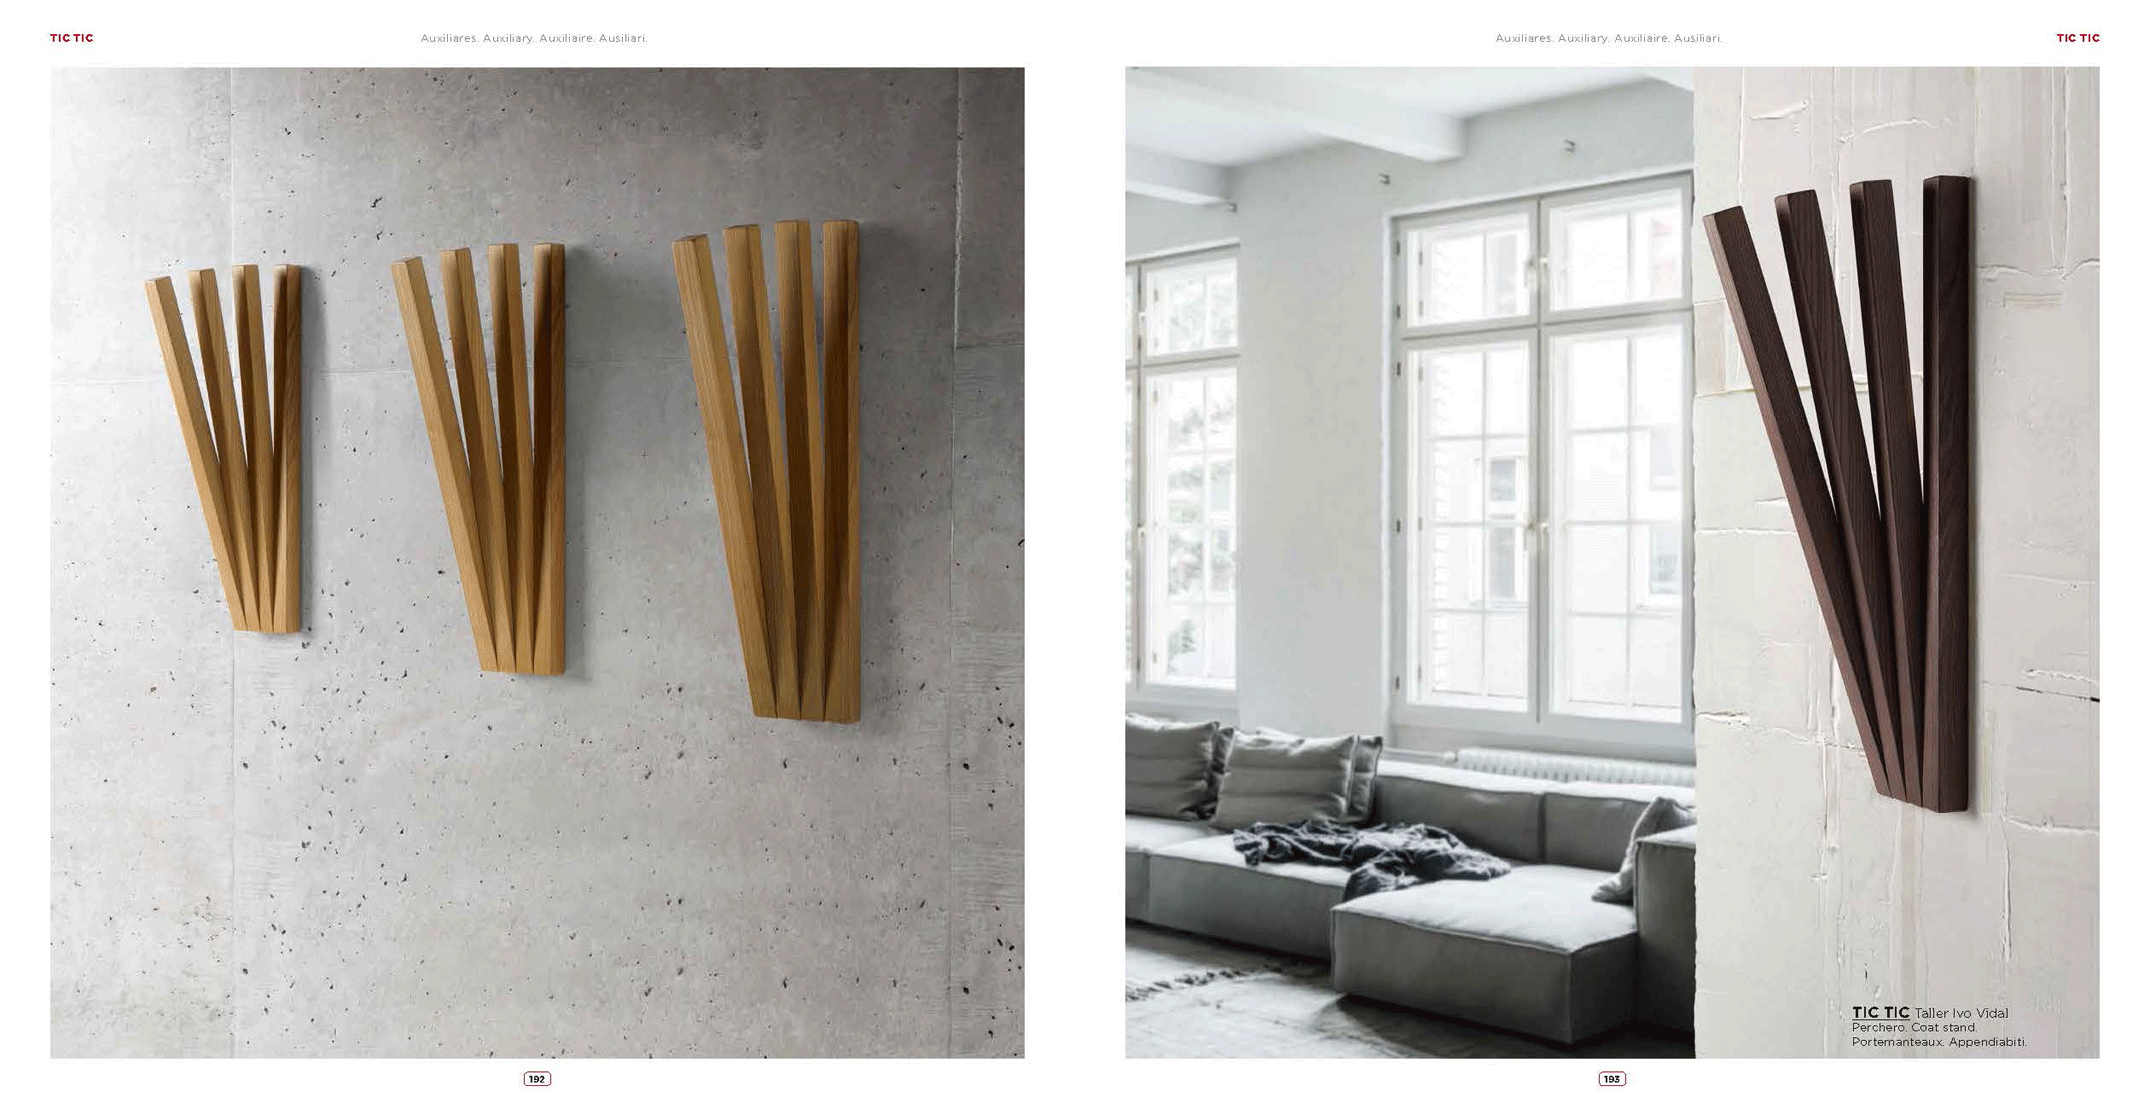 Brands Arredoclassic Living Room, Italy Tic Tic Coat Hanger